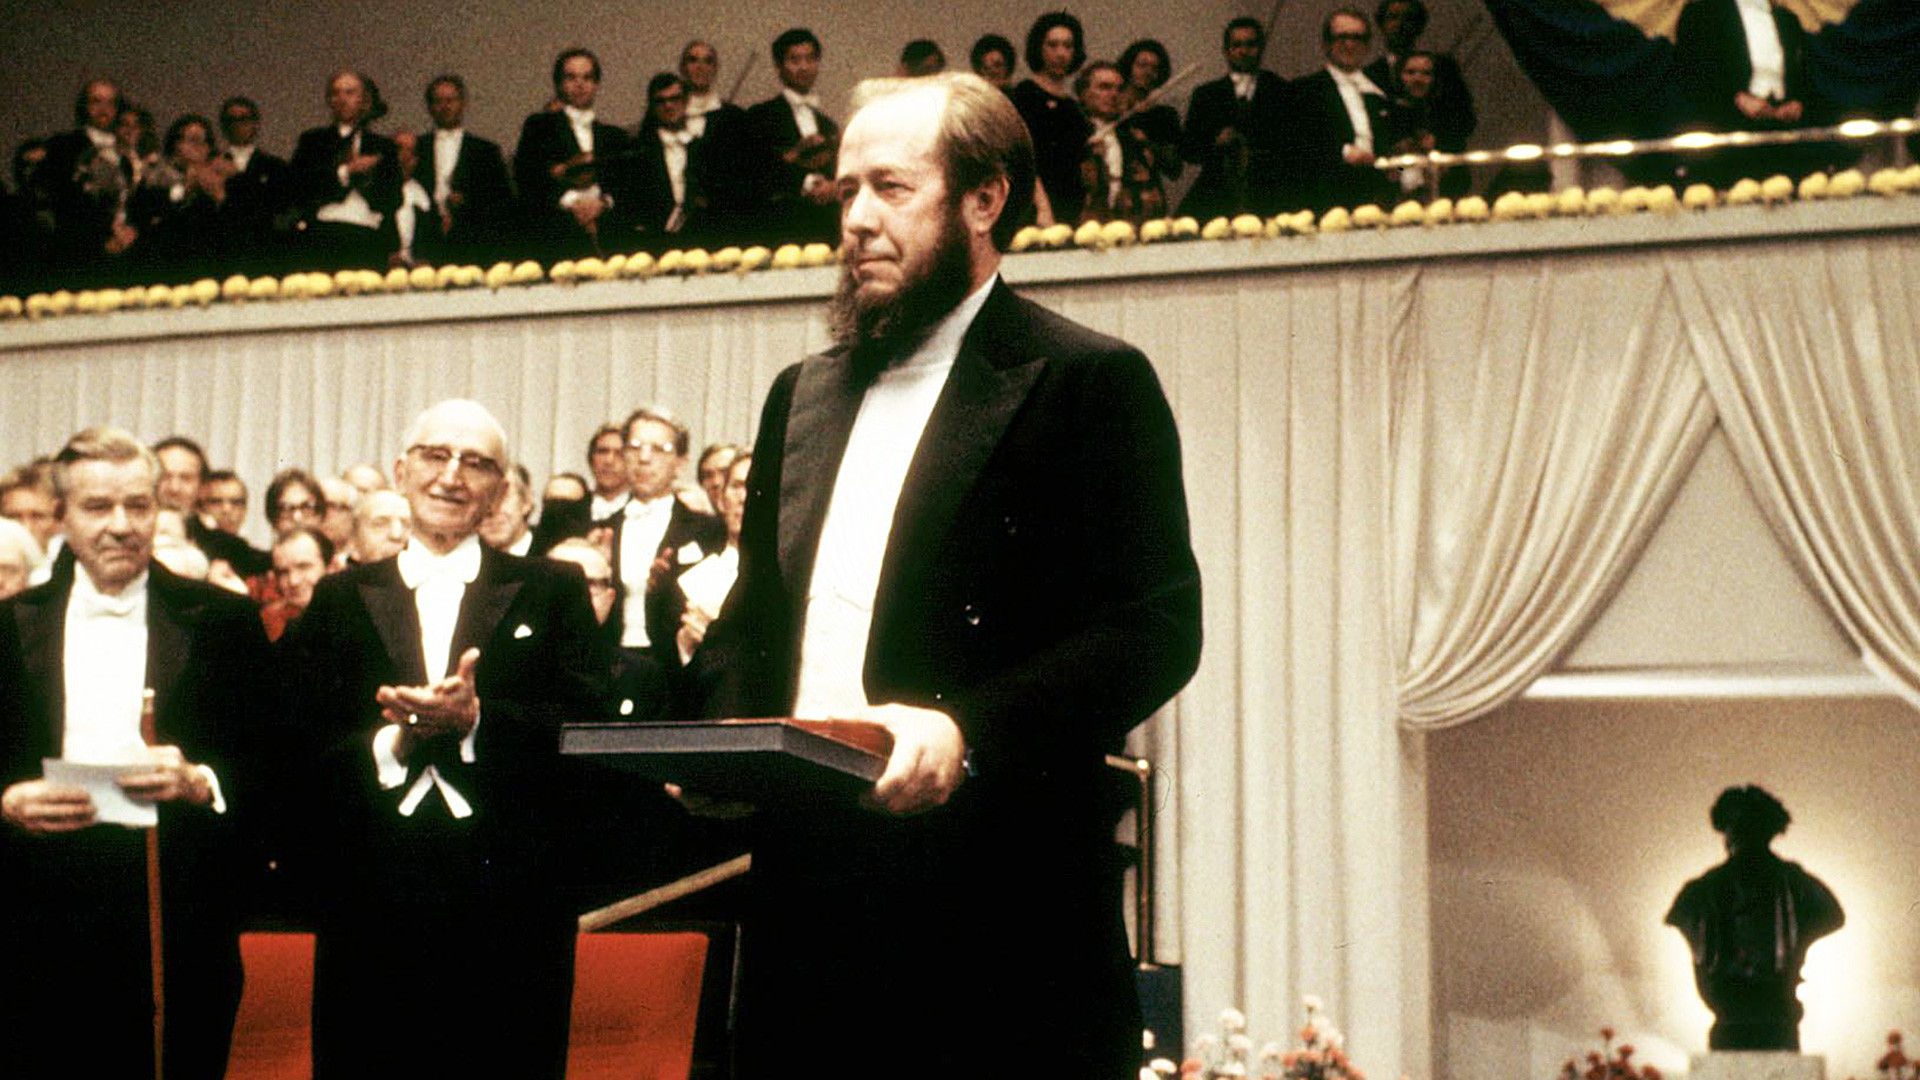 Exiled Soviet writer Alexander Solzhenitsyn, winner of the Literature Nobel Prize of 1970